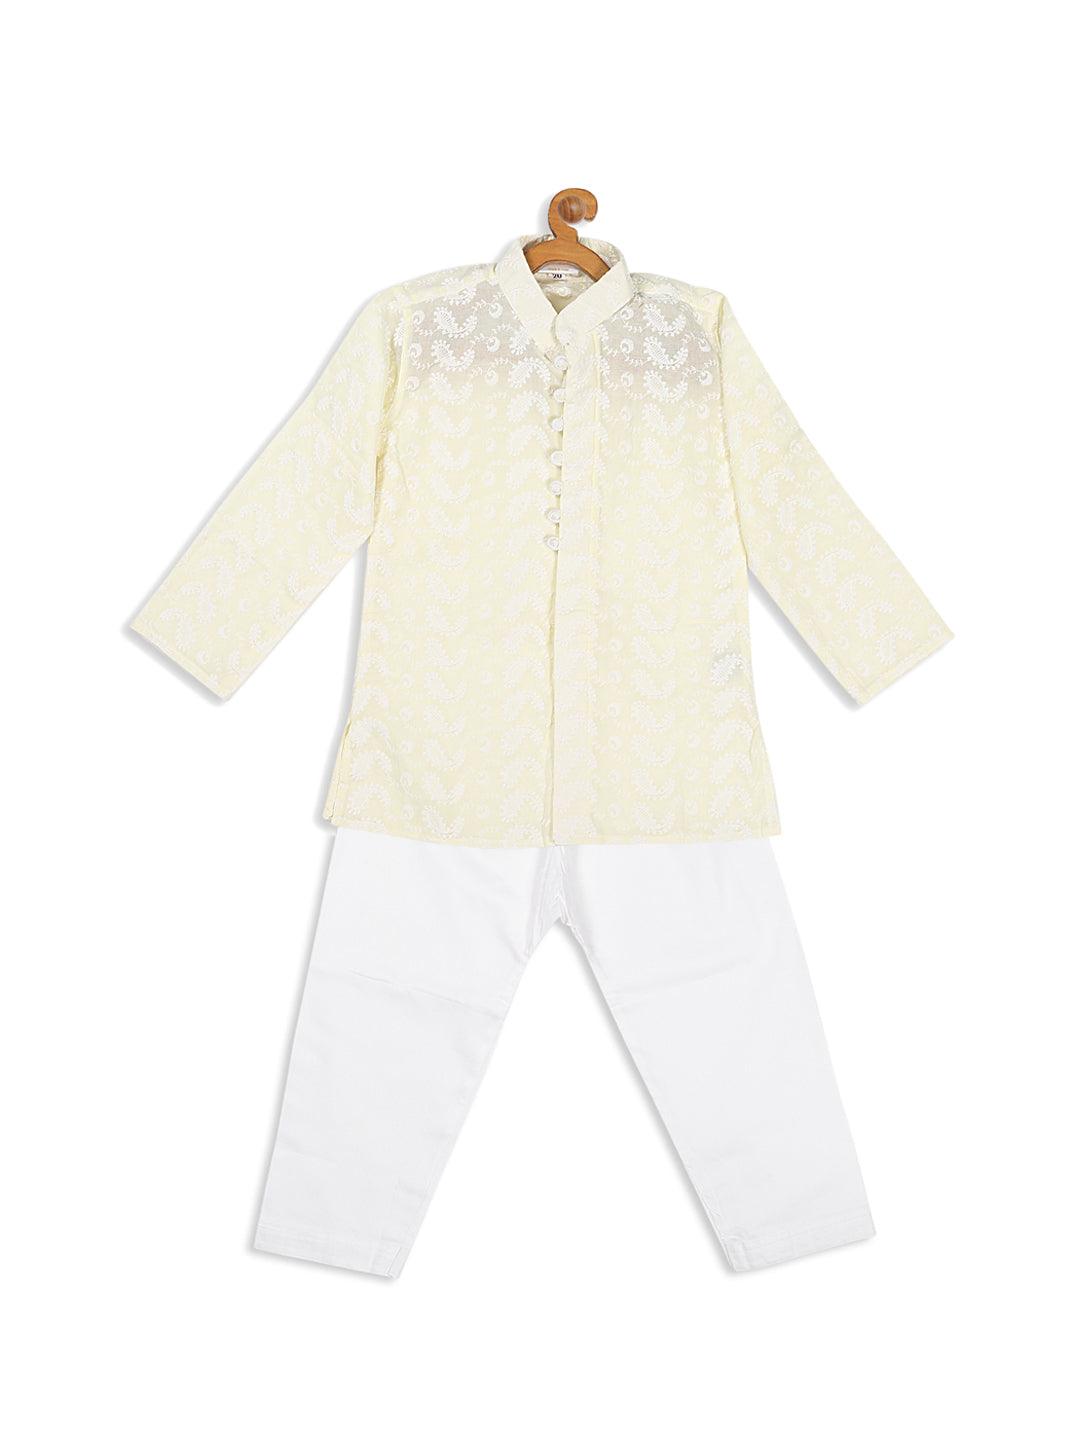 VASTRAMAY SISHU Boy's Yellow Chikankari Pure Cotton Kurta With Pyjama Set - Uboric